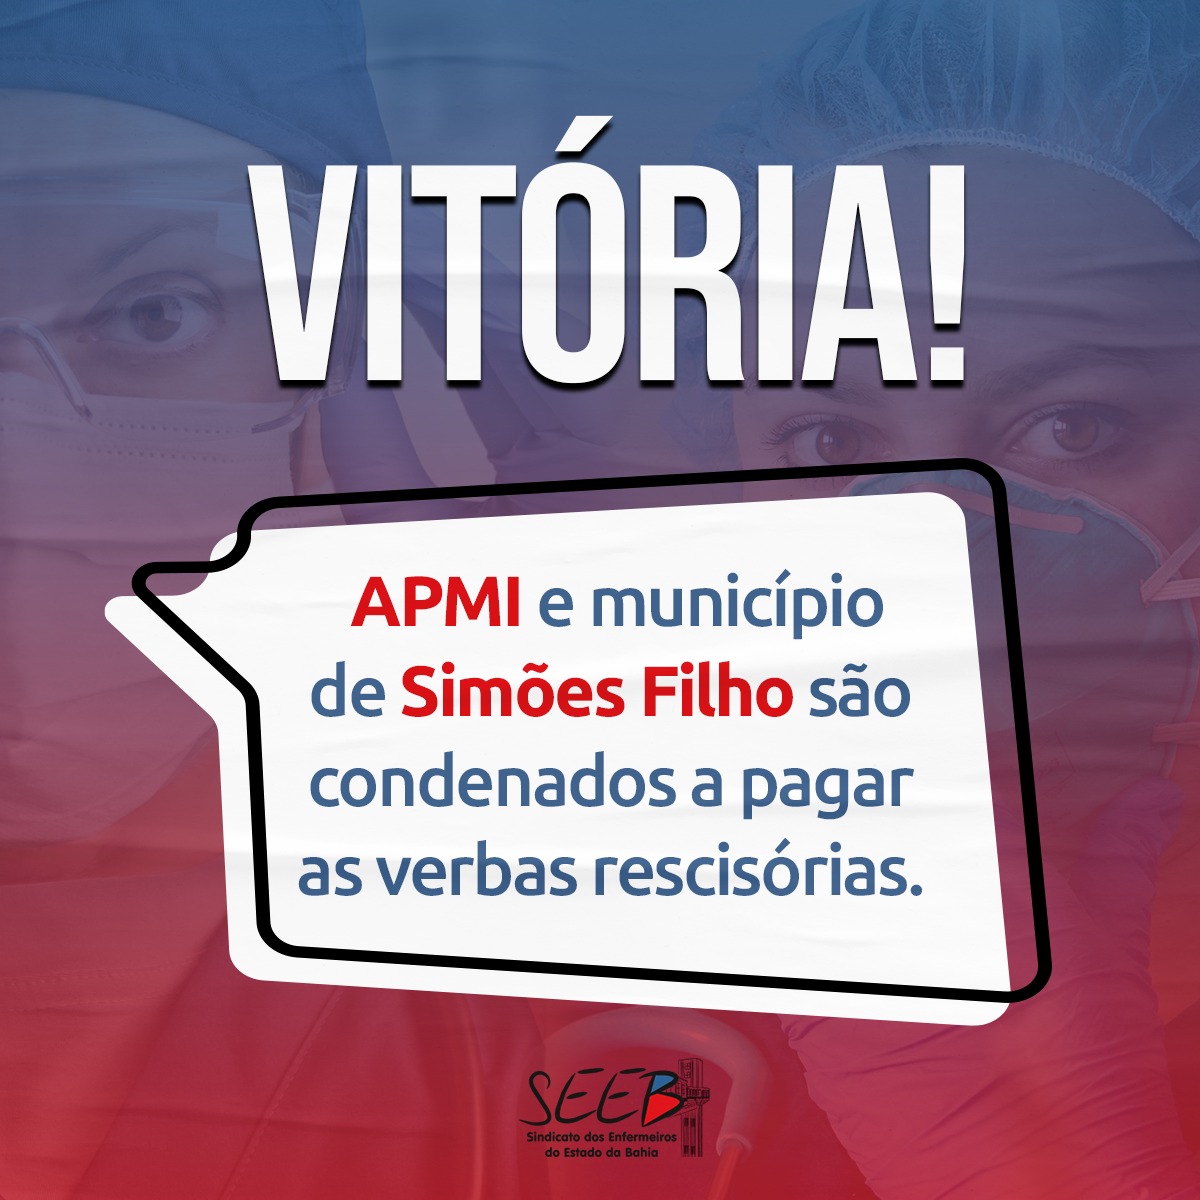 Vitória: APMI e município de Simões Filho são condenados a pagar as verbas rescisórias